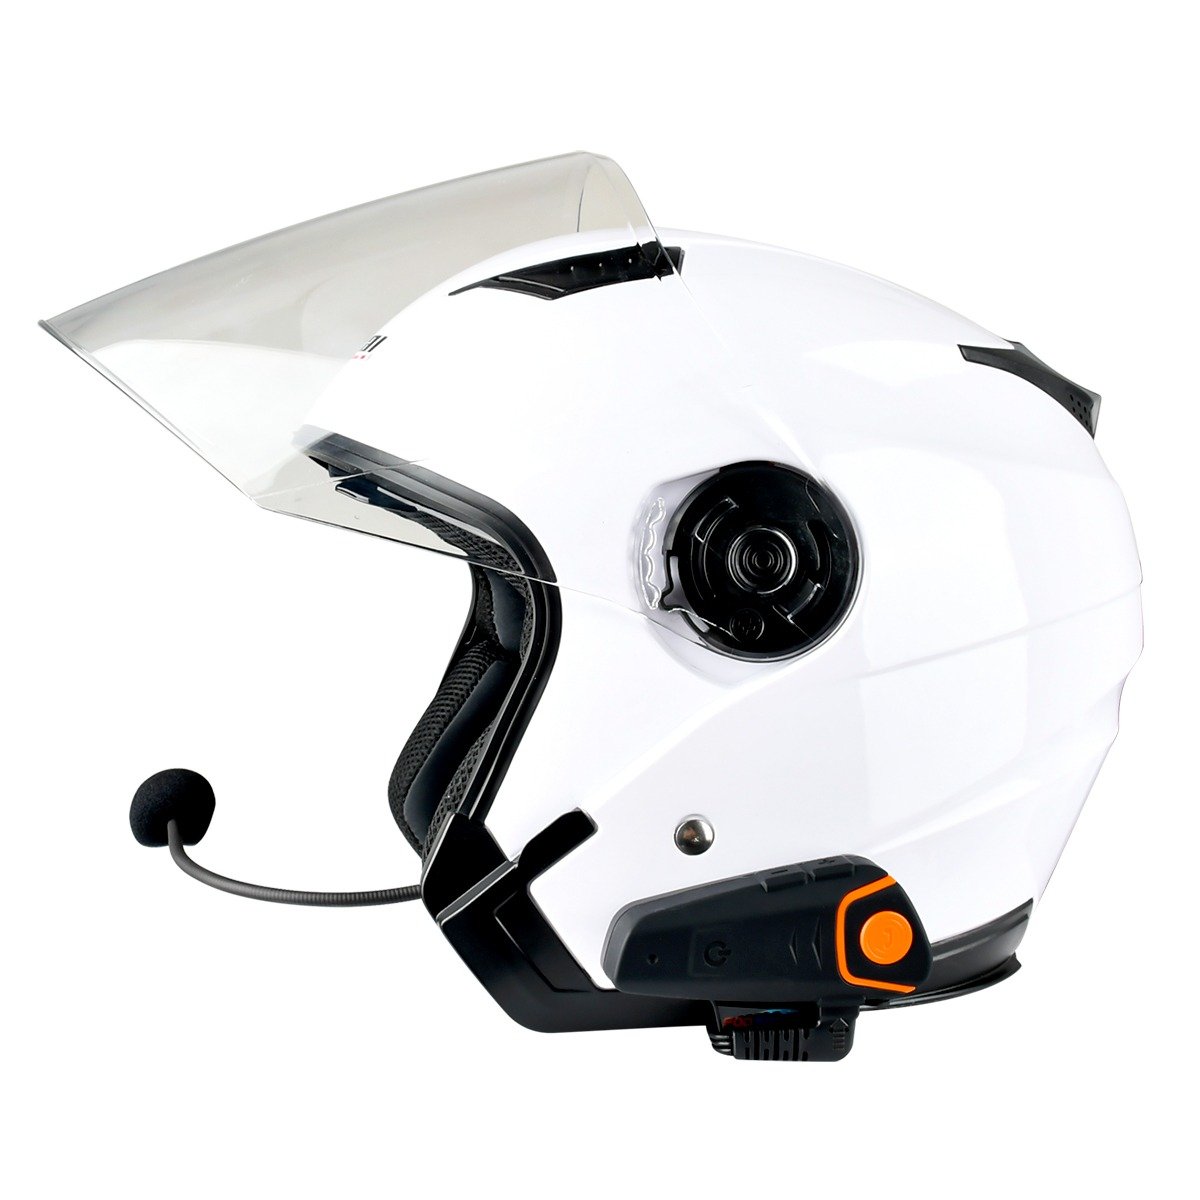 Fodsports BT-S2 Pro casque de moto interphone moto casque sans fil